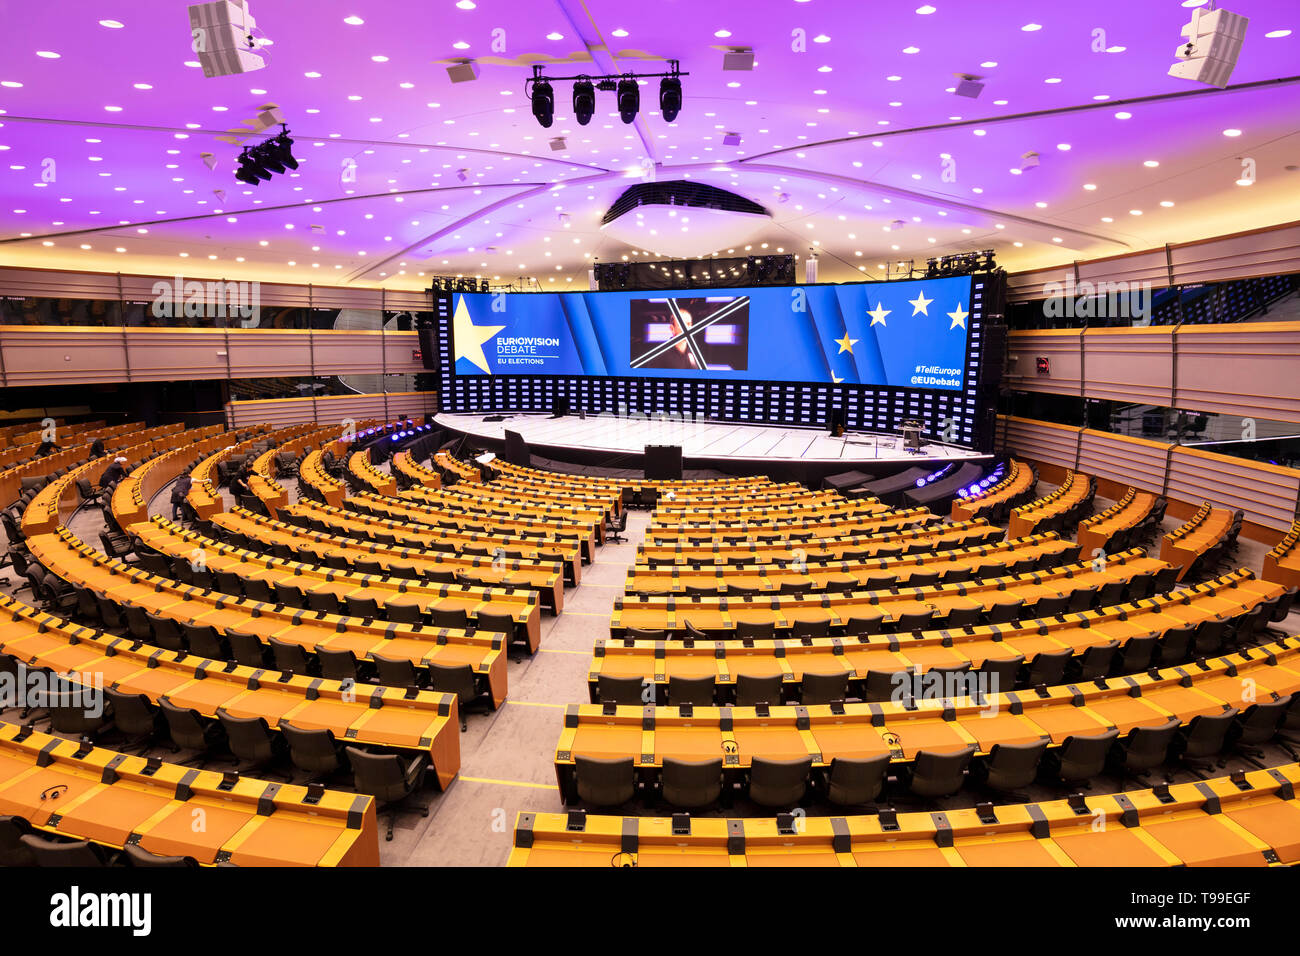 L'hémicycle du Parlement de l'UE ou de l'intérieur chambre, salle plénière, galerie de l'édifice du Parlement européen Bruxelles Belgique eu Europe Banque D'Images